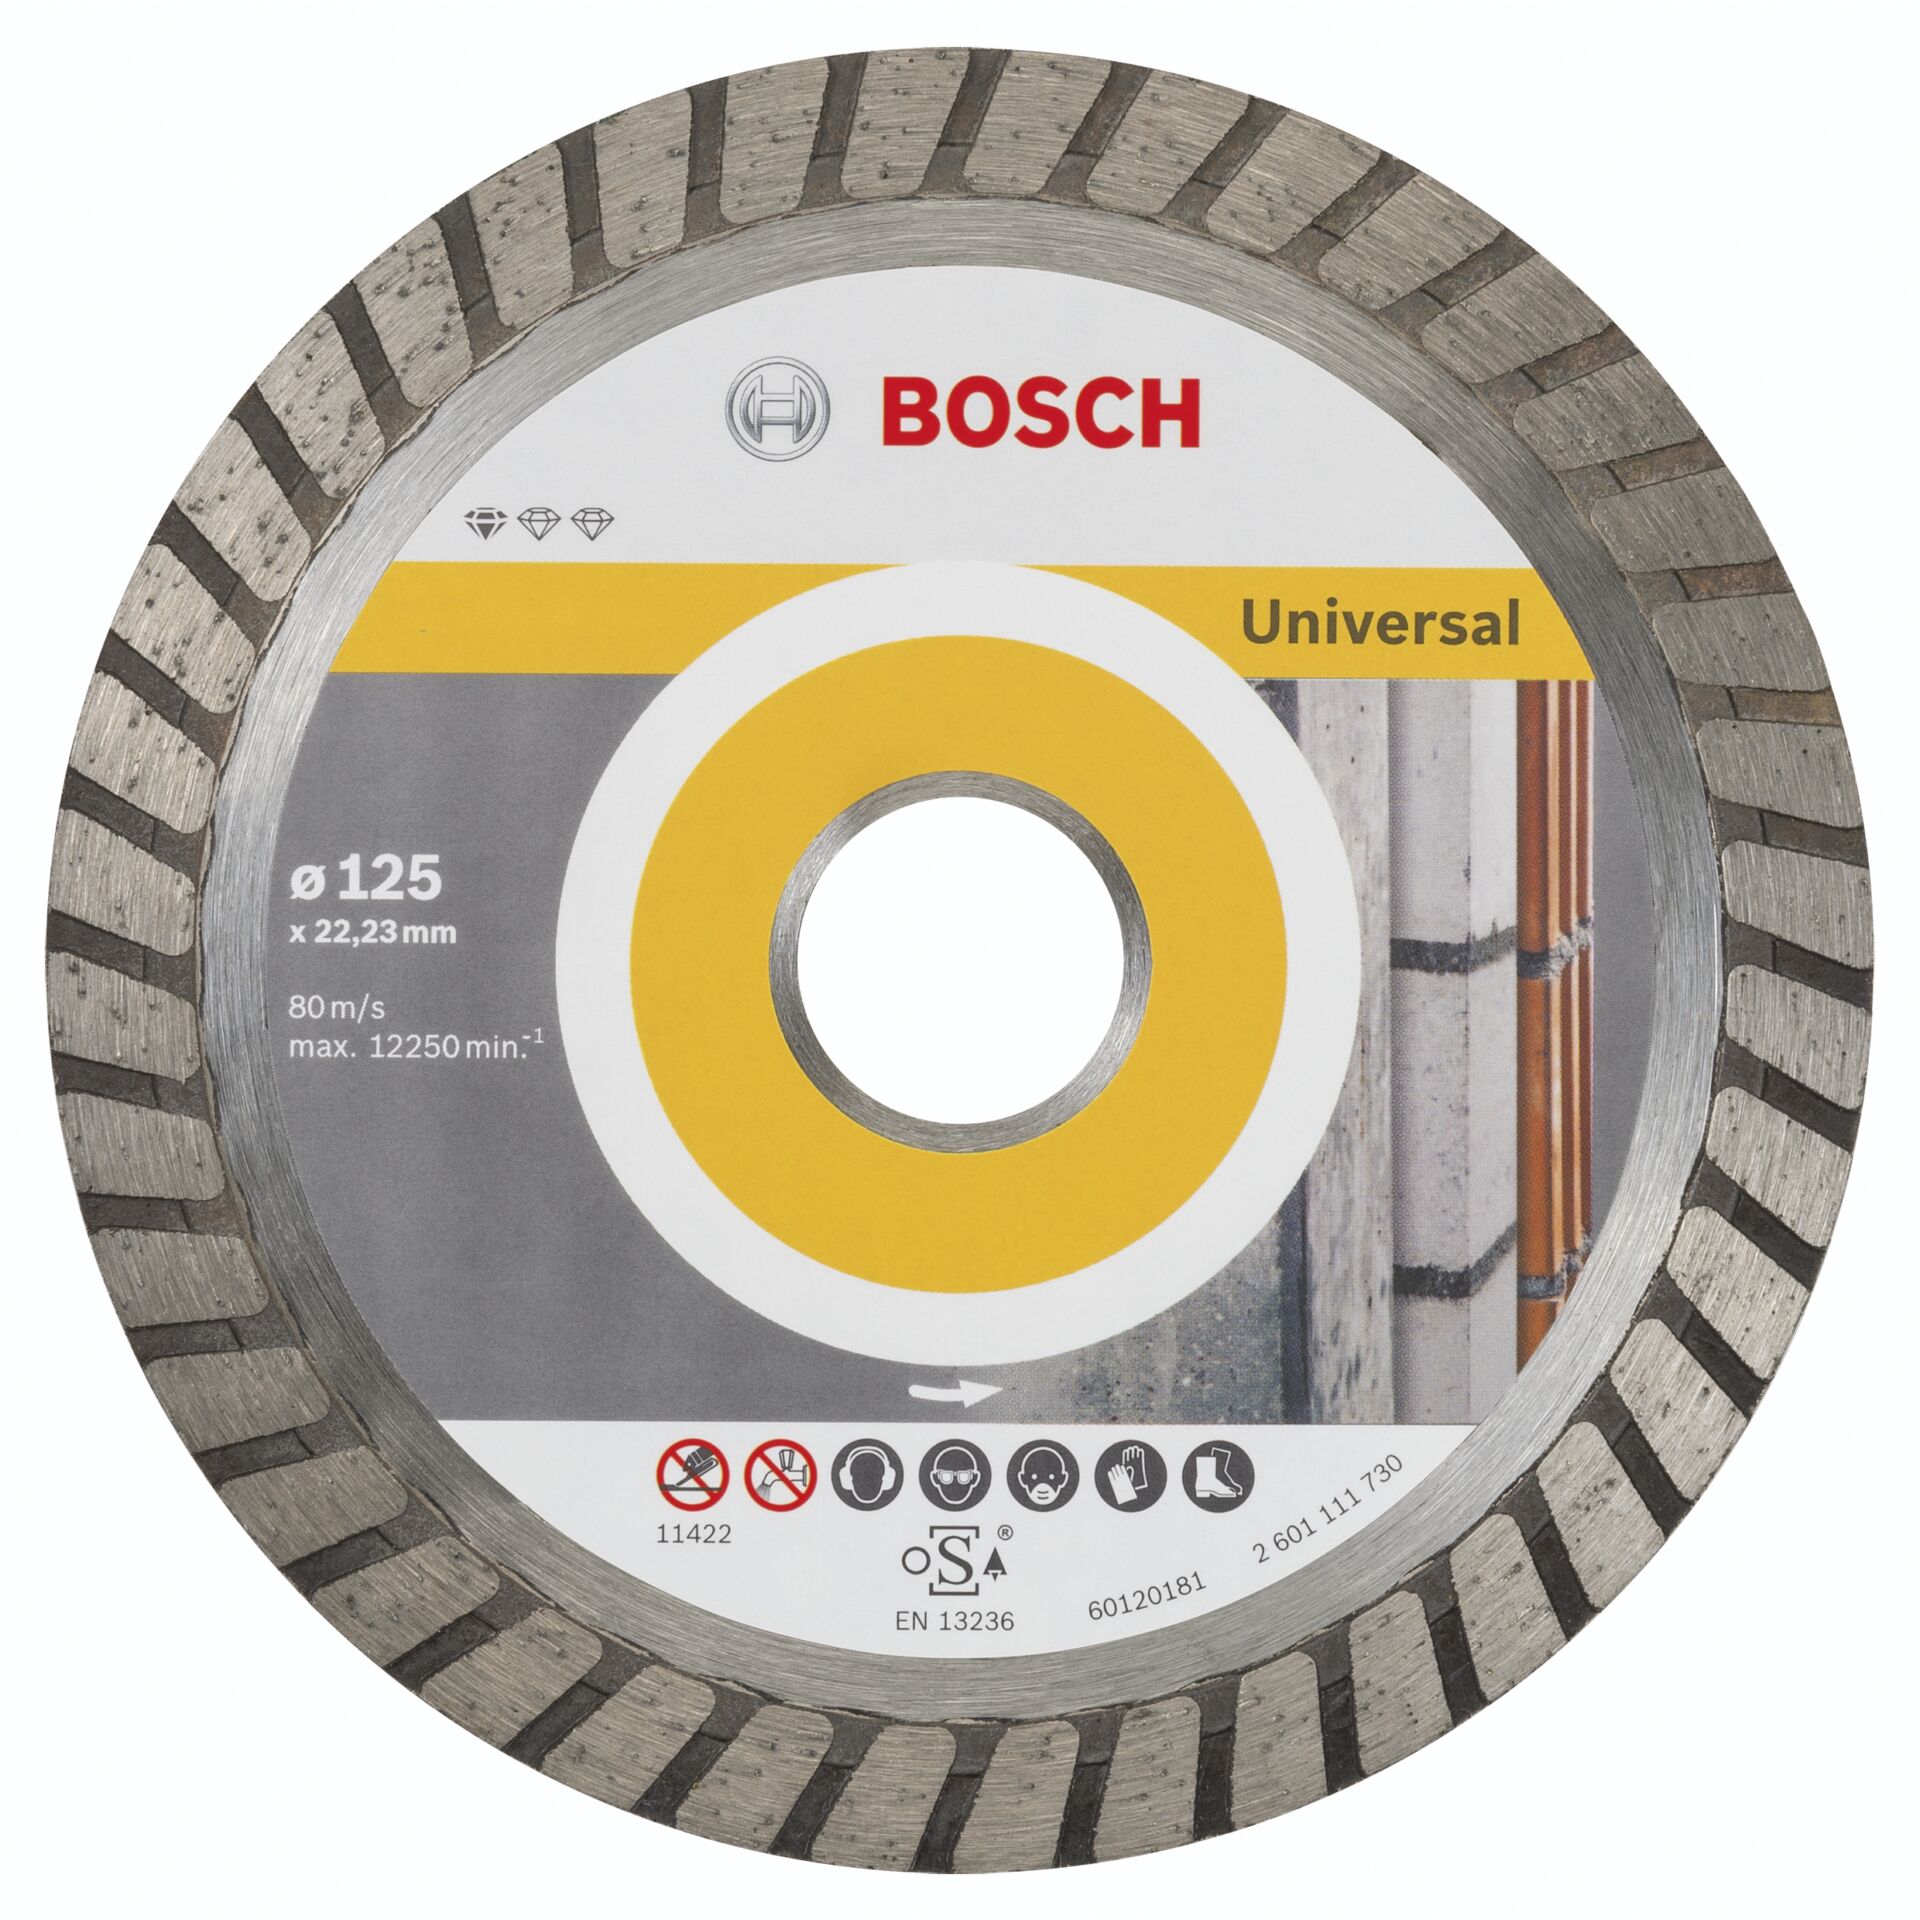 Bosch DIA-TS 125x22,23 Std. Universal Turbo